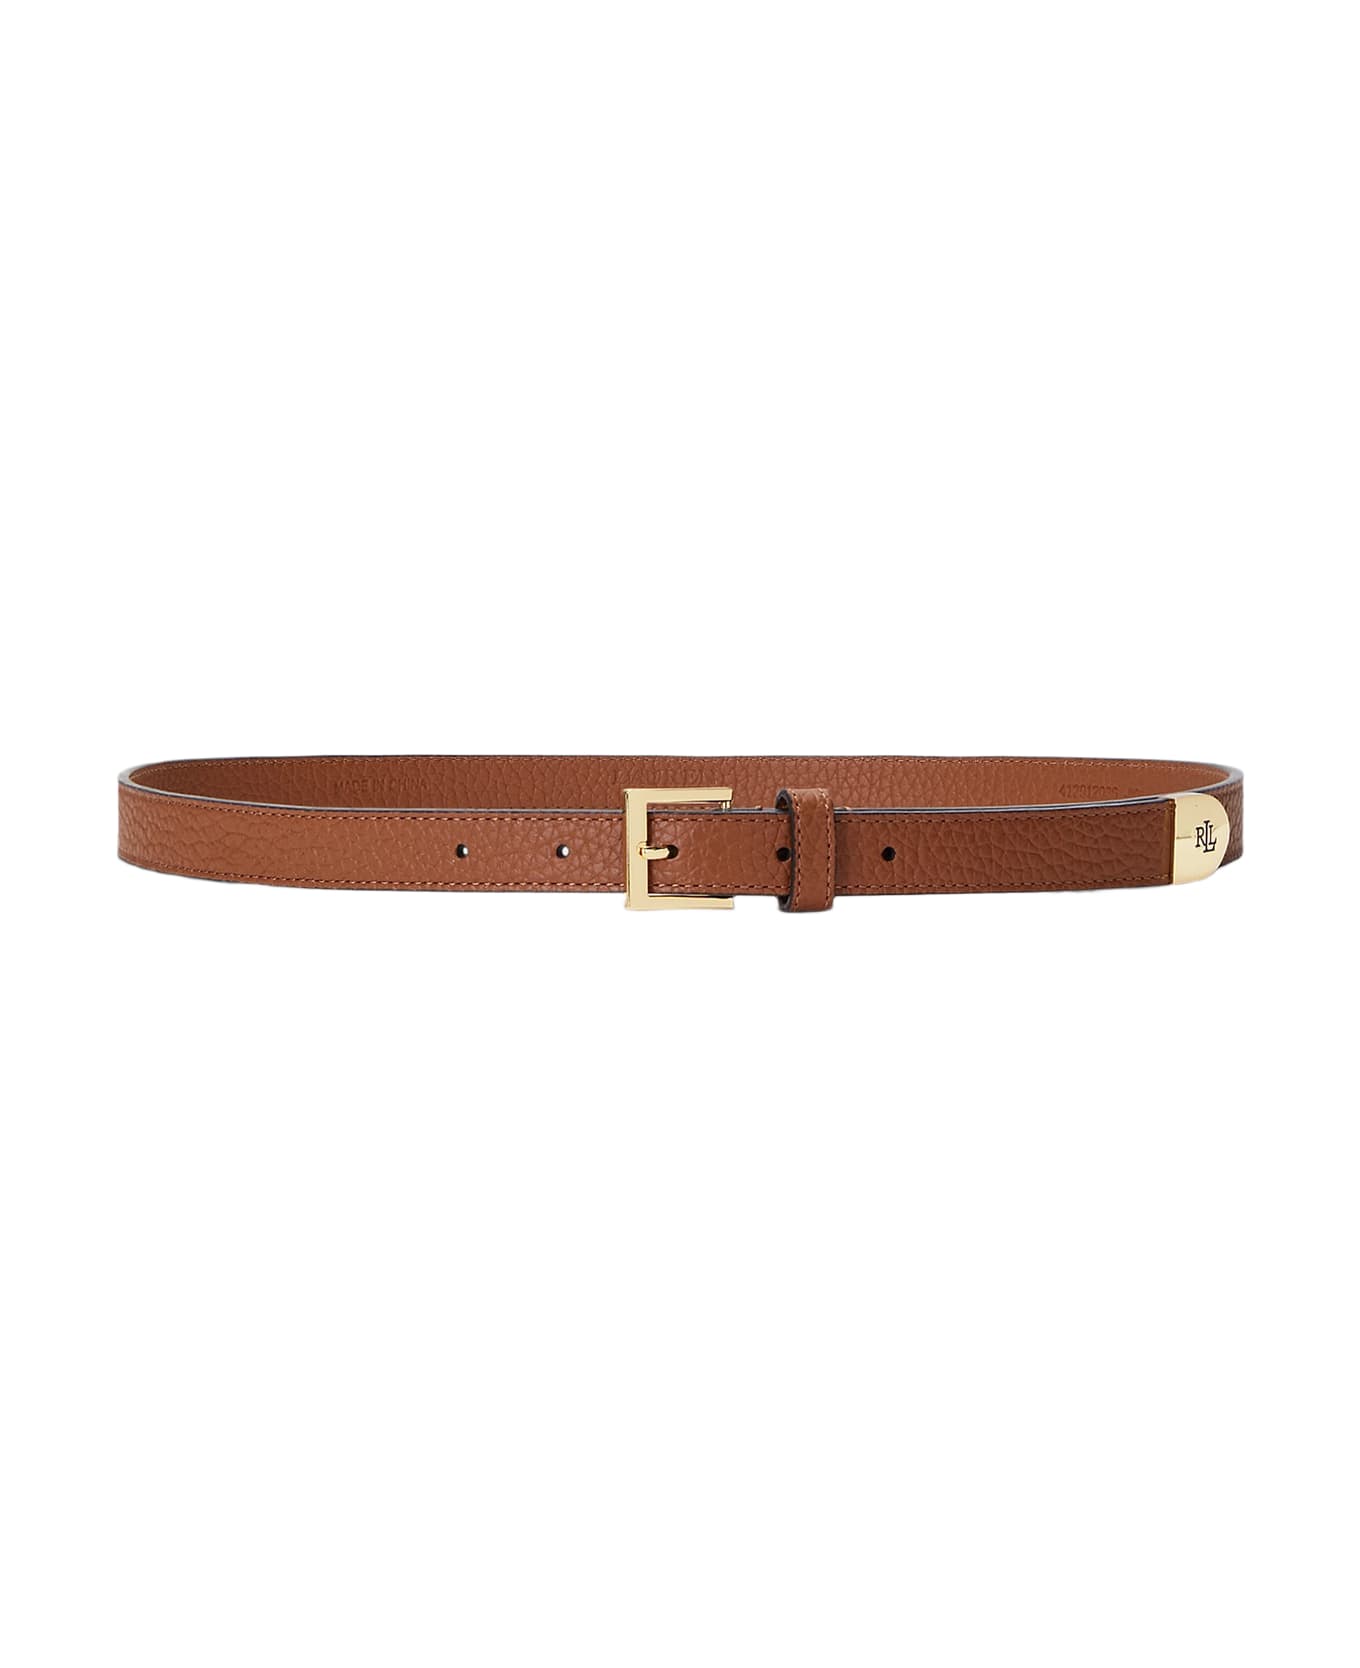 Ralph Lauren Lrl Cap 20 Belt Skinny - Brown ベルト